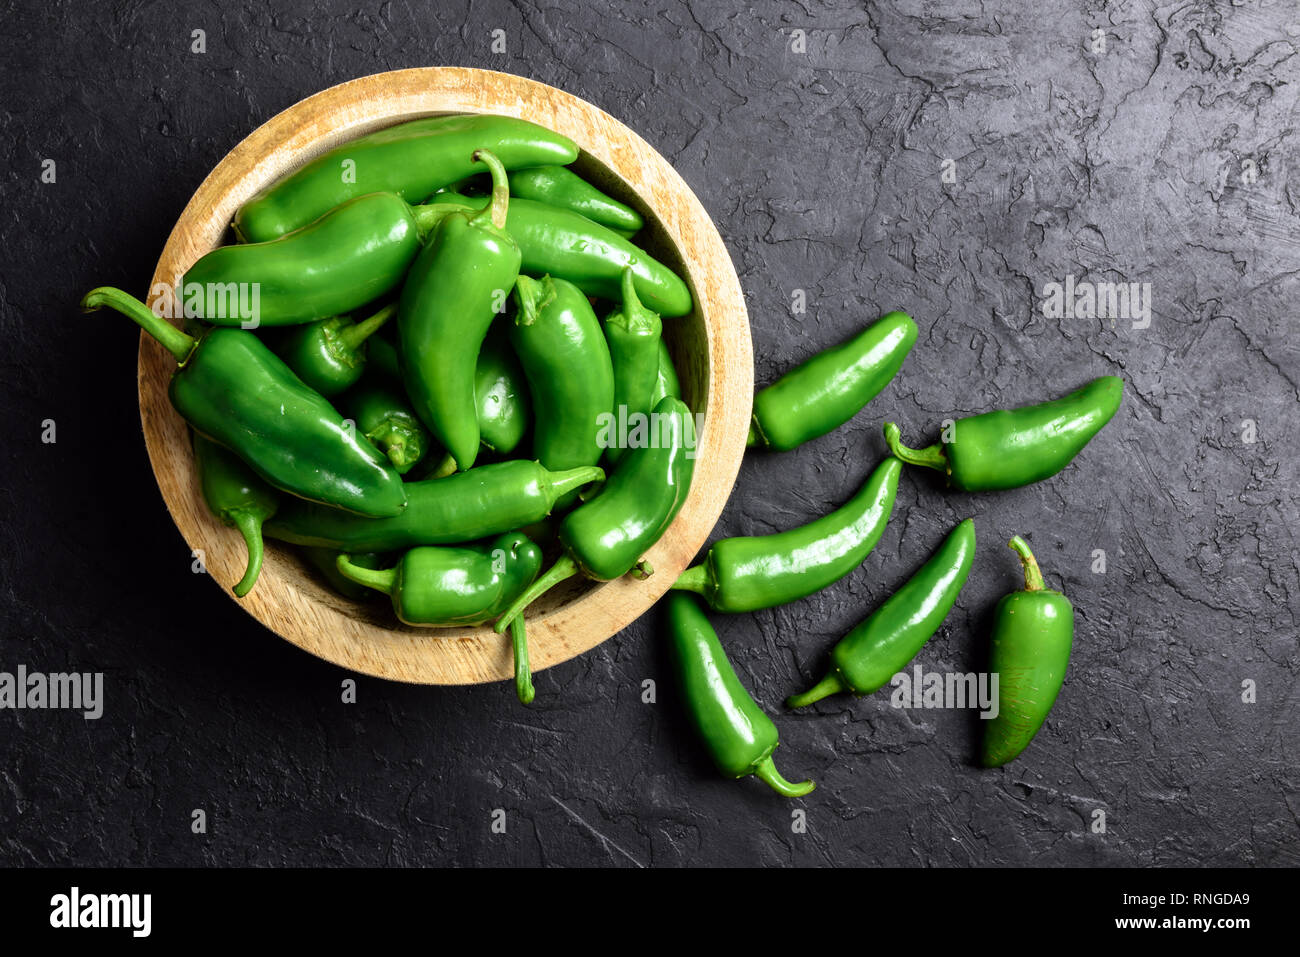 Verde jalapeno hot pepper nel piatto in legno closeup. Fotografia di cibo Foto Stock